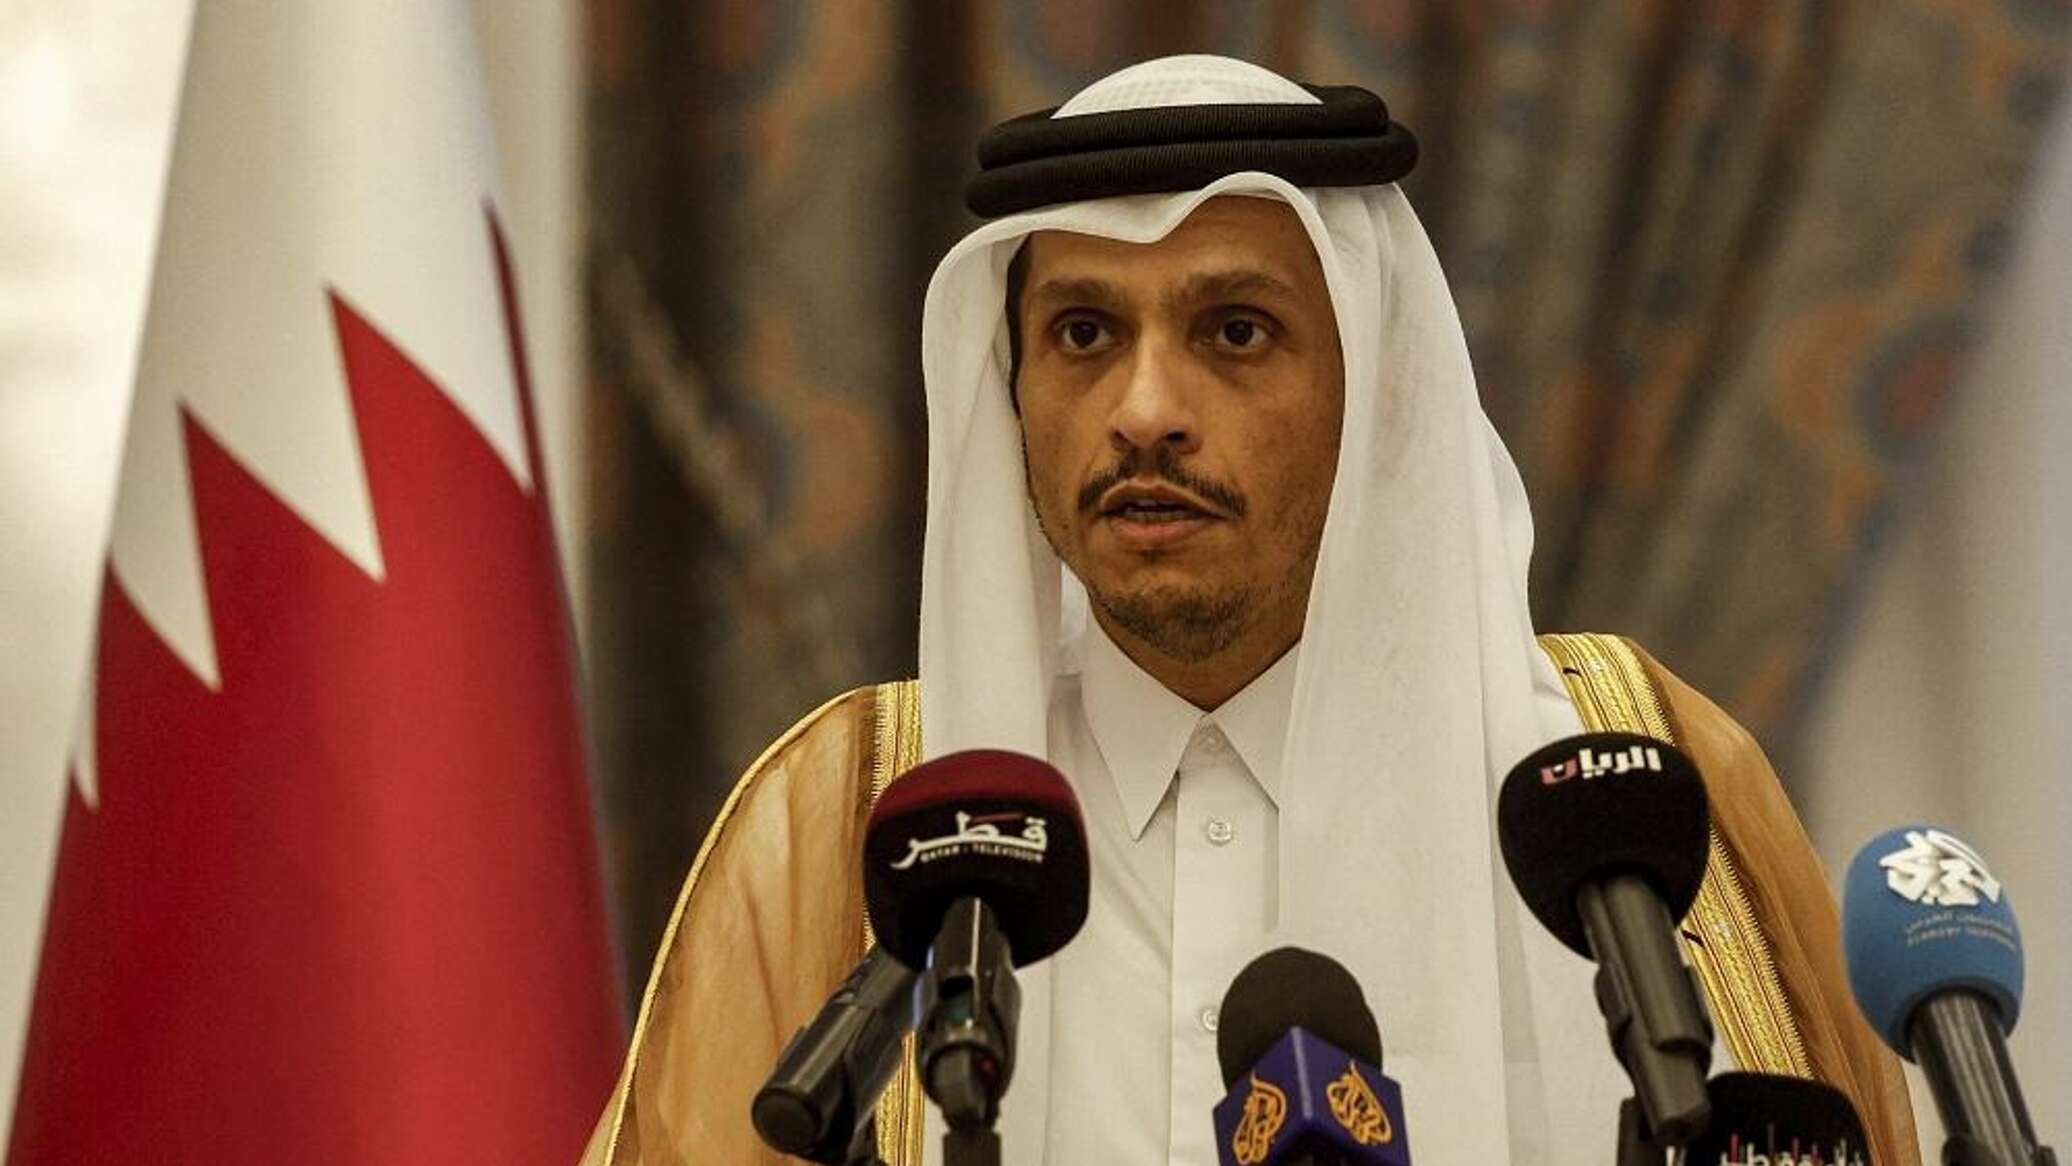 وزير خارجية قطر: ما يحدث في غزة يدفع إلى توجيه أسئلة مشروعة حول ماهية النظام الدولي